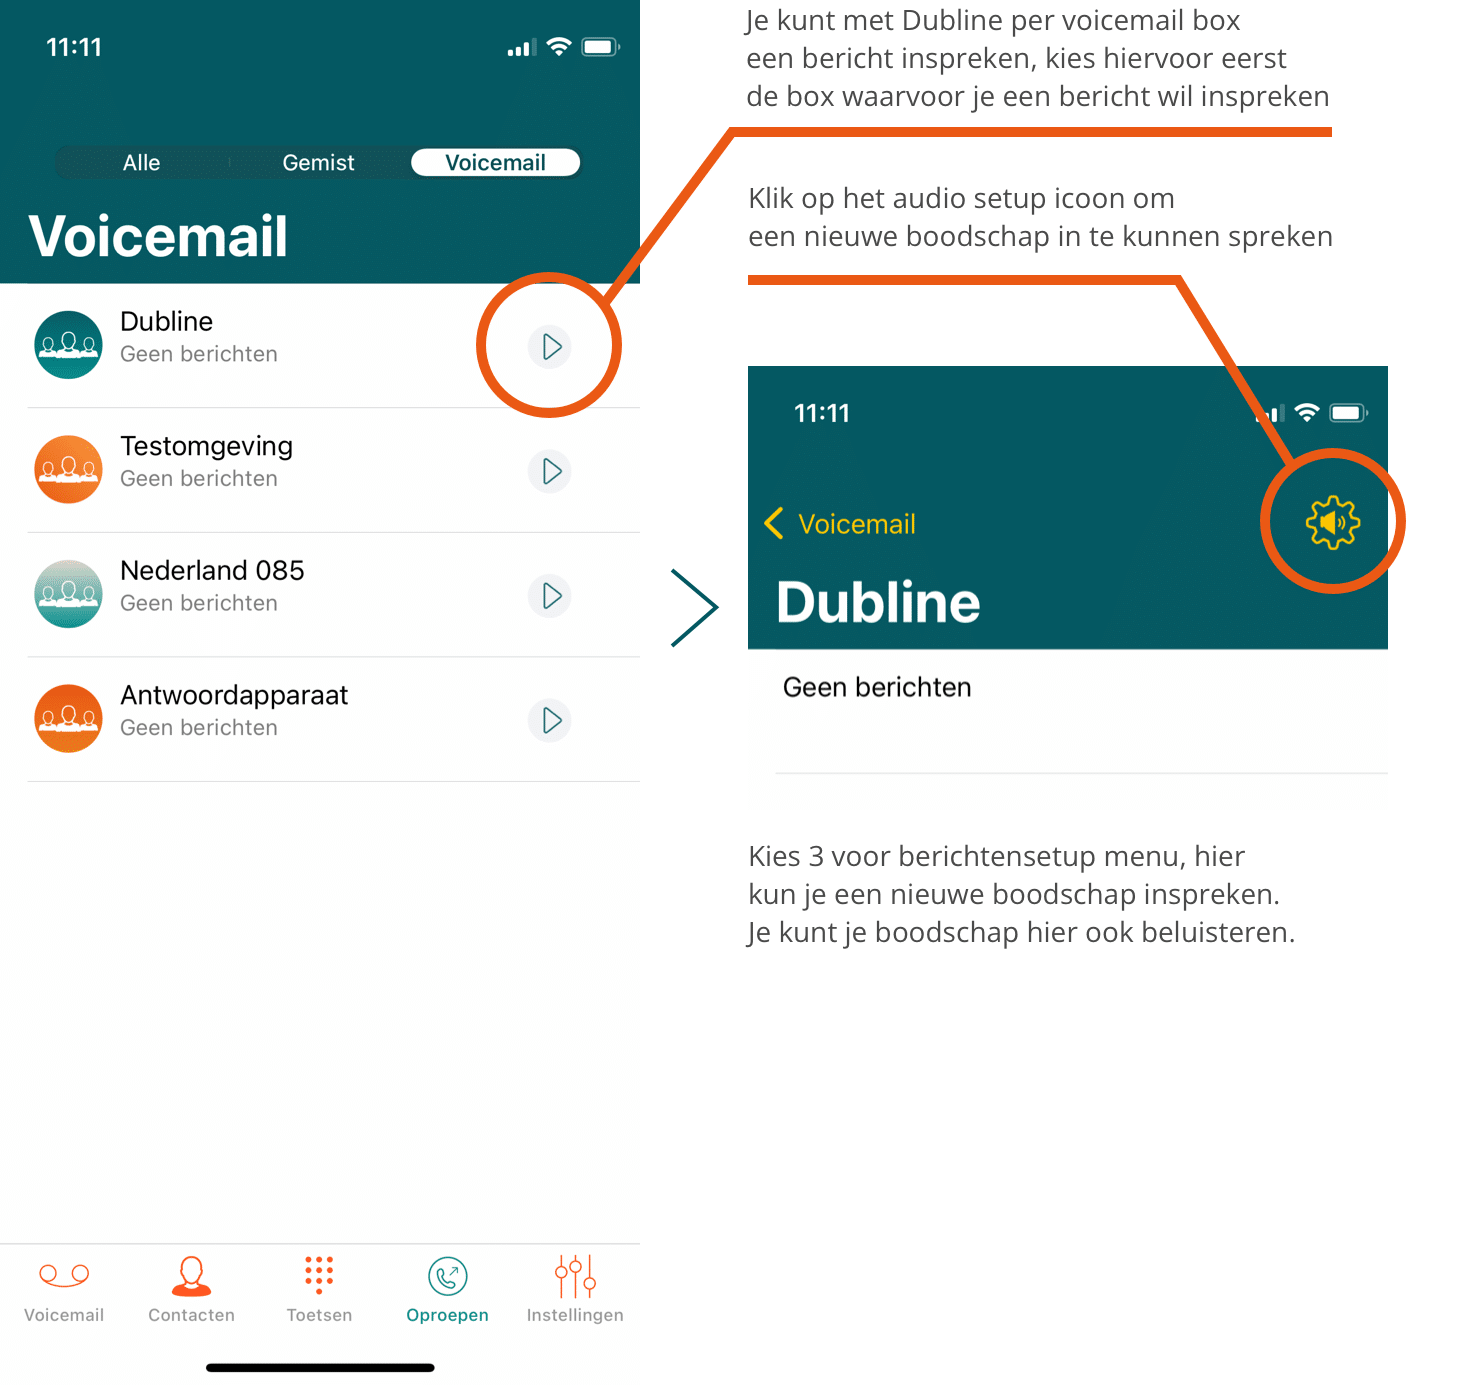 Uitleg hoe het instellen van de Voicemail werkt in beeld